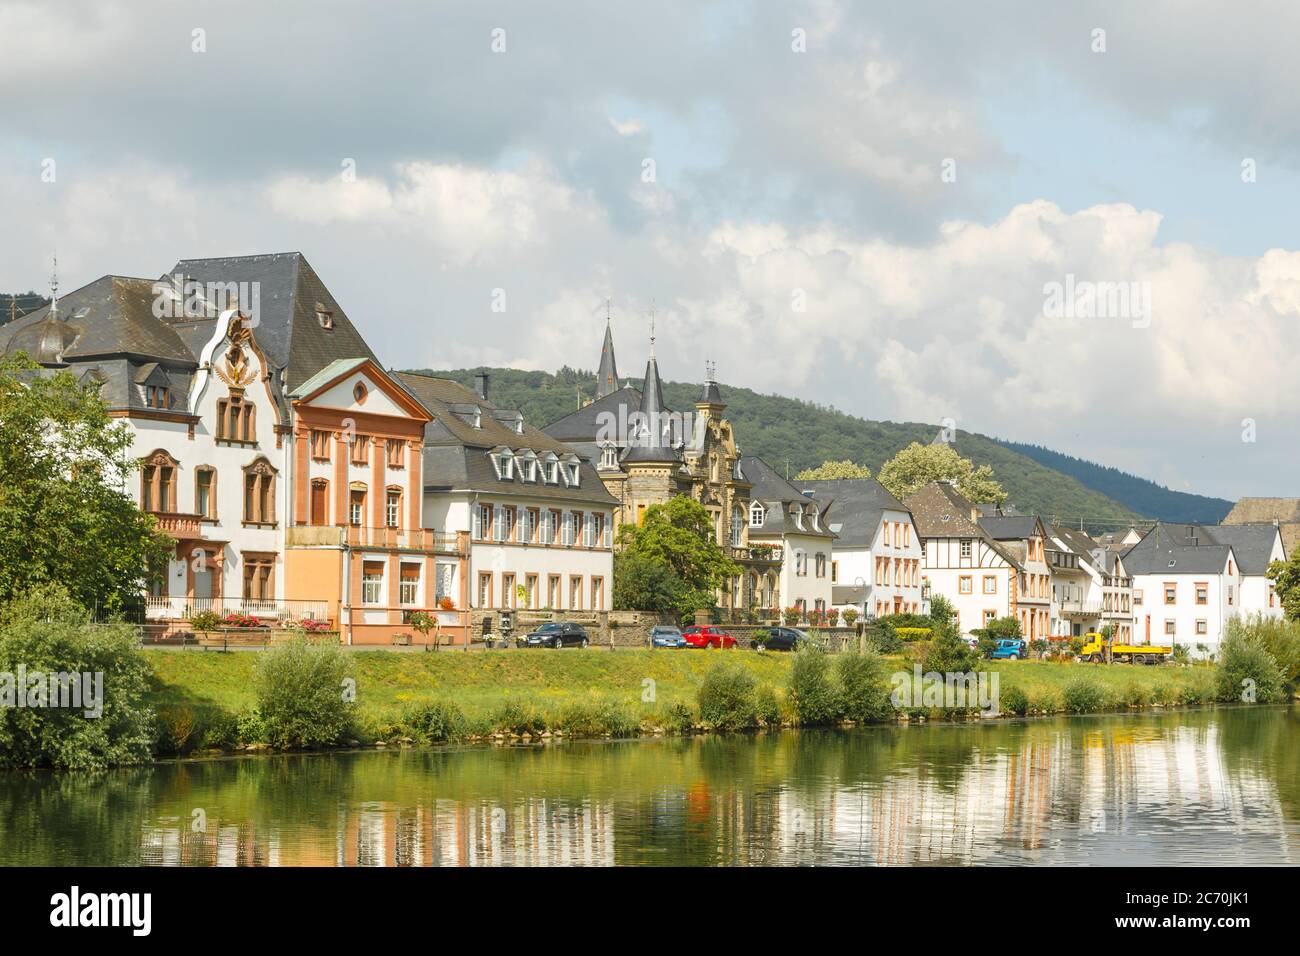 Panorama von Wehlen bei Bernkastel-Kues, Rheinland-Pfalz, Deutschland Stock Photo